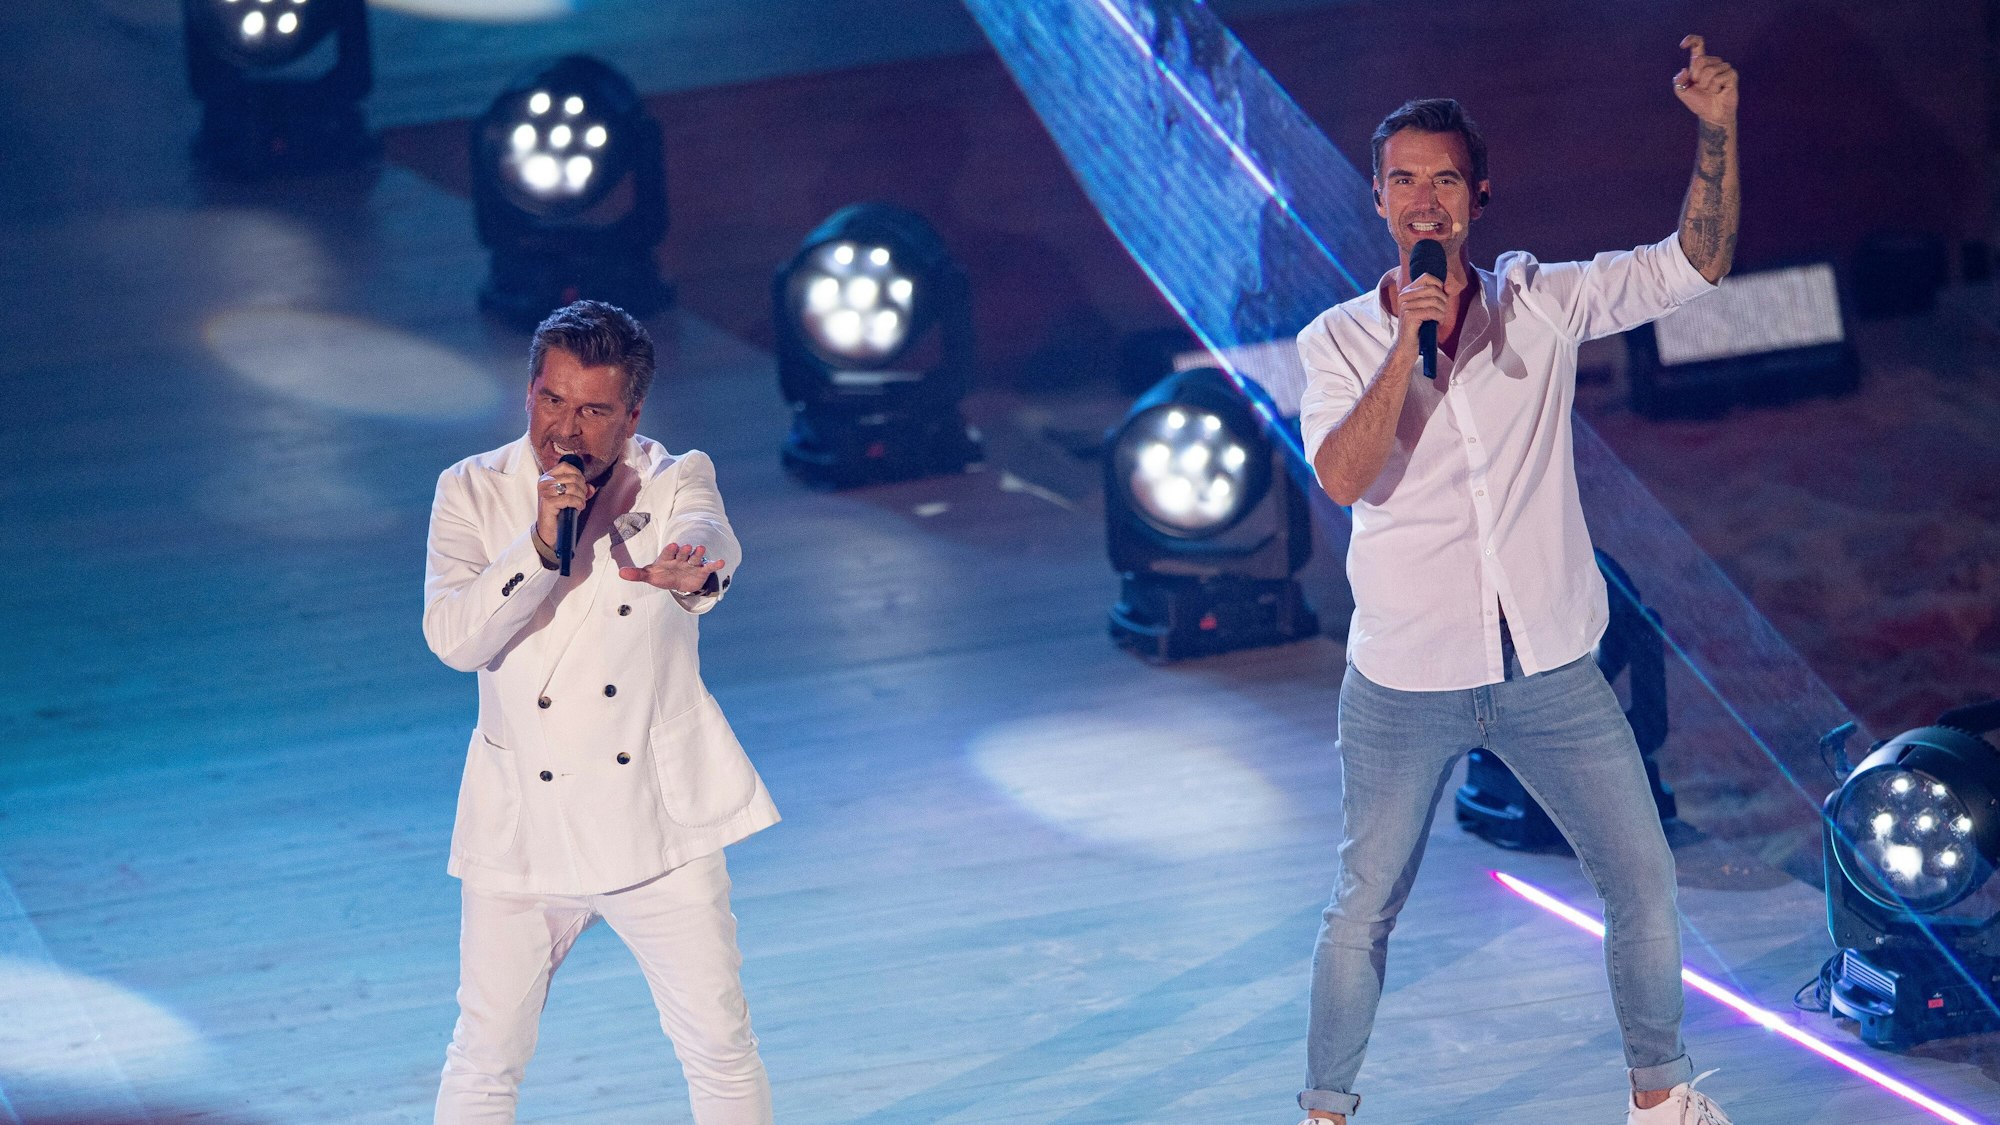 Sänger Thomas Anders (l) und Florian Silbereisen stehen auf der Bühne zur großen Schlagerstrandparty zum 40. Geburtstag von Florian Silbereisen.